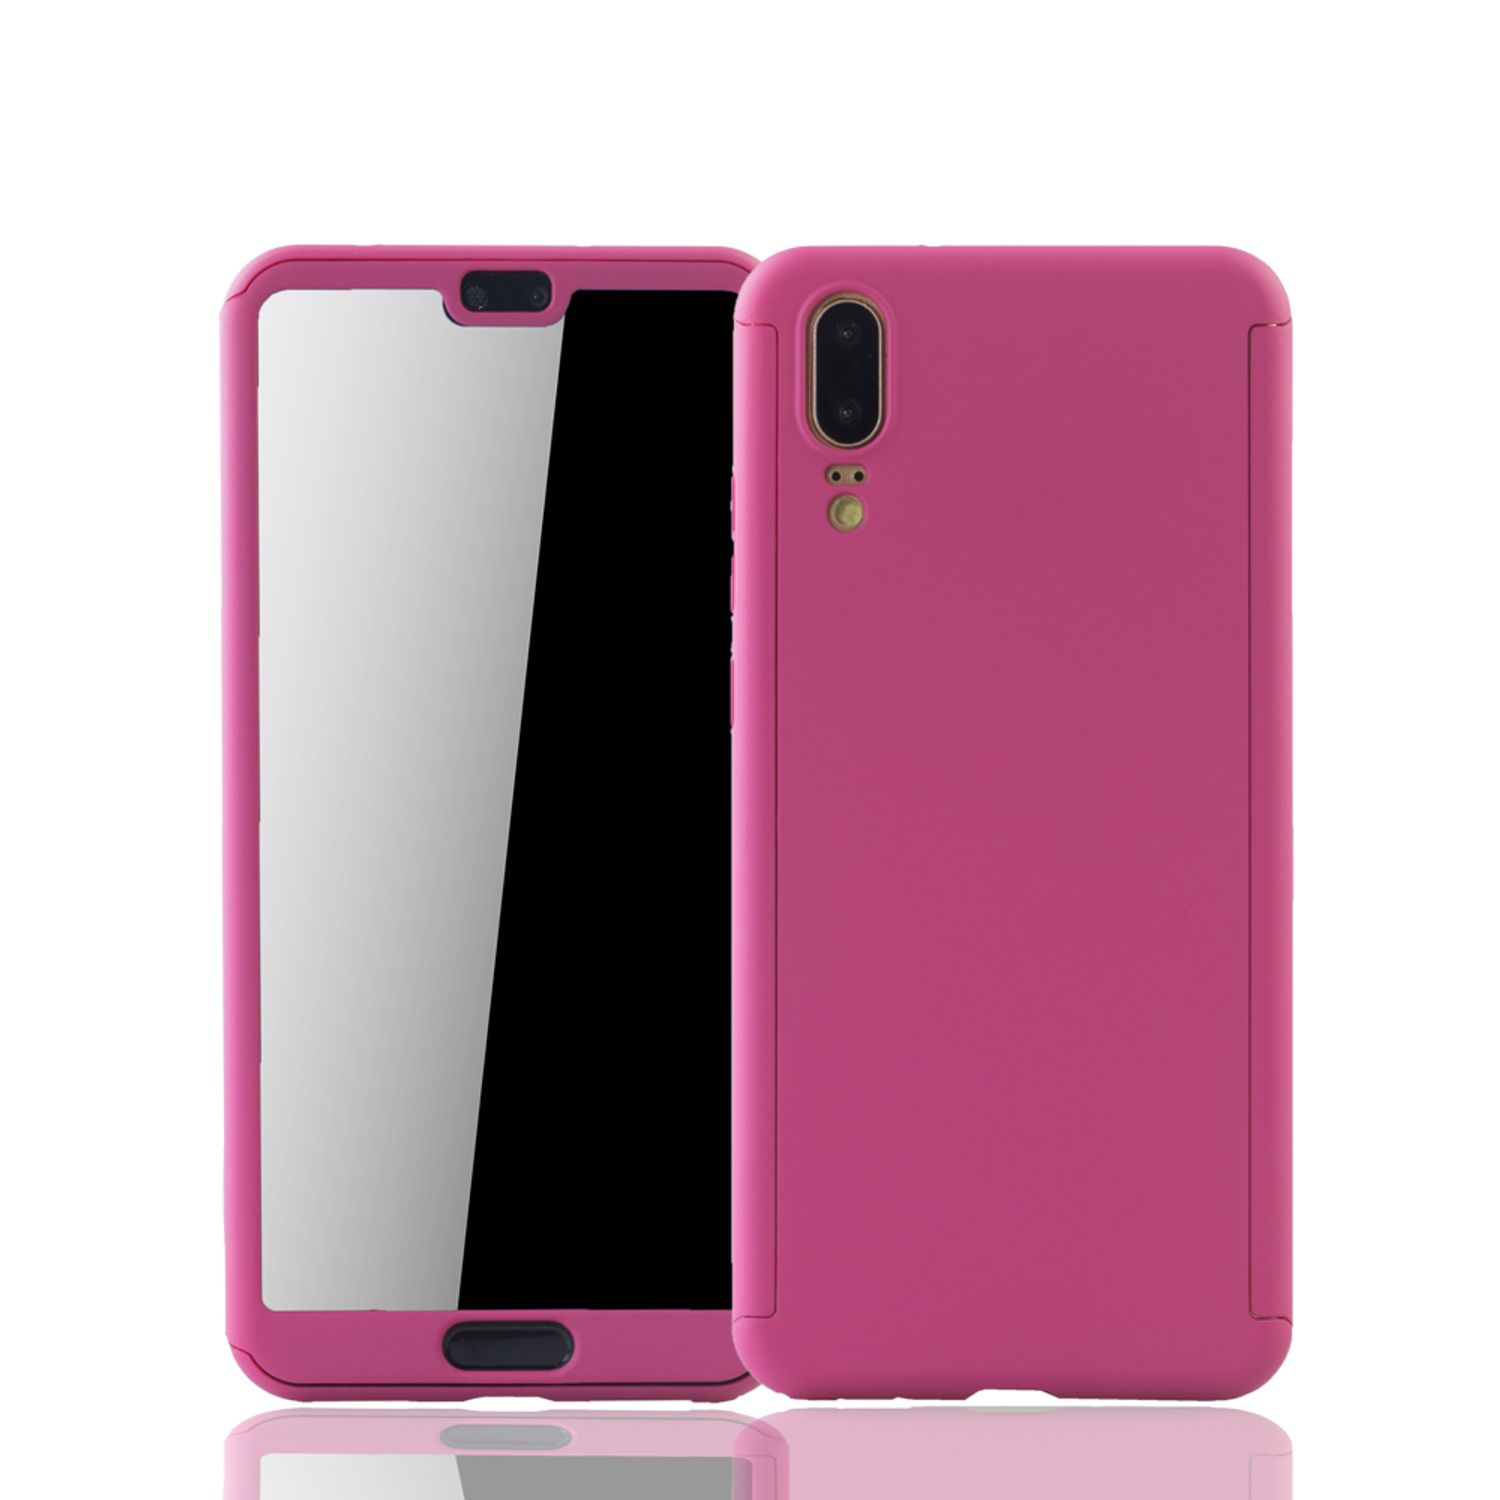 Schutzhülle, DESIGN P20, Huawei, KÖNIG Pink Cover, Full